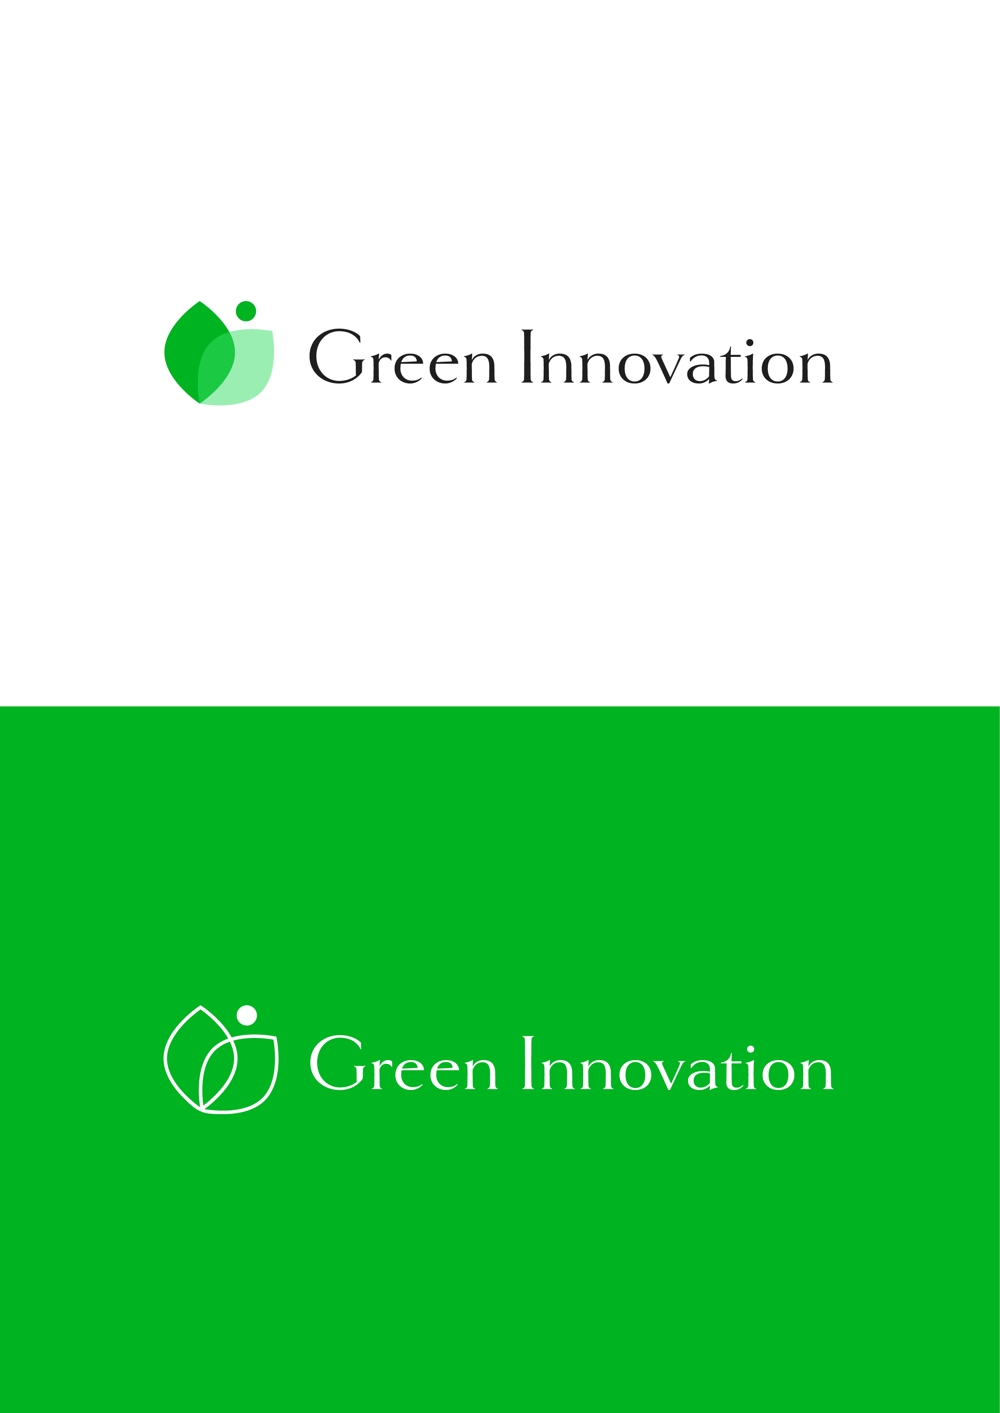 Green Innovation様_ロゴマーク_1.jpg